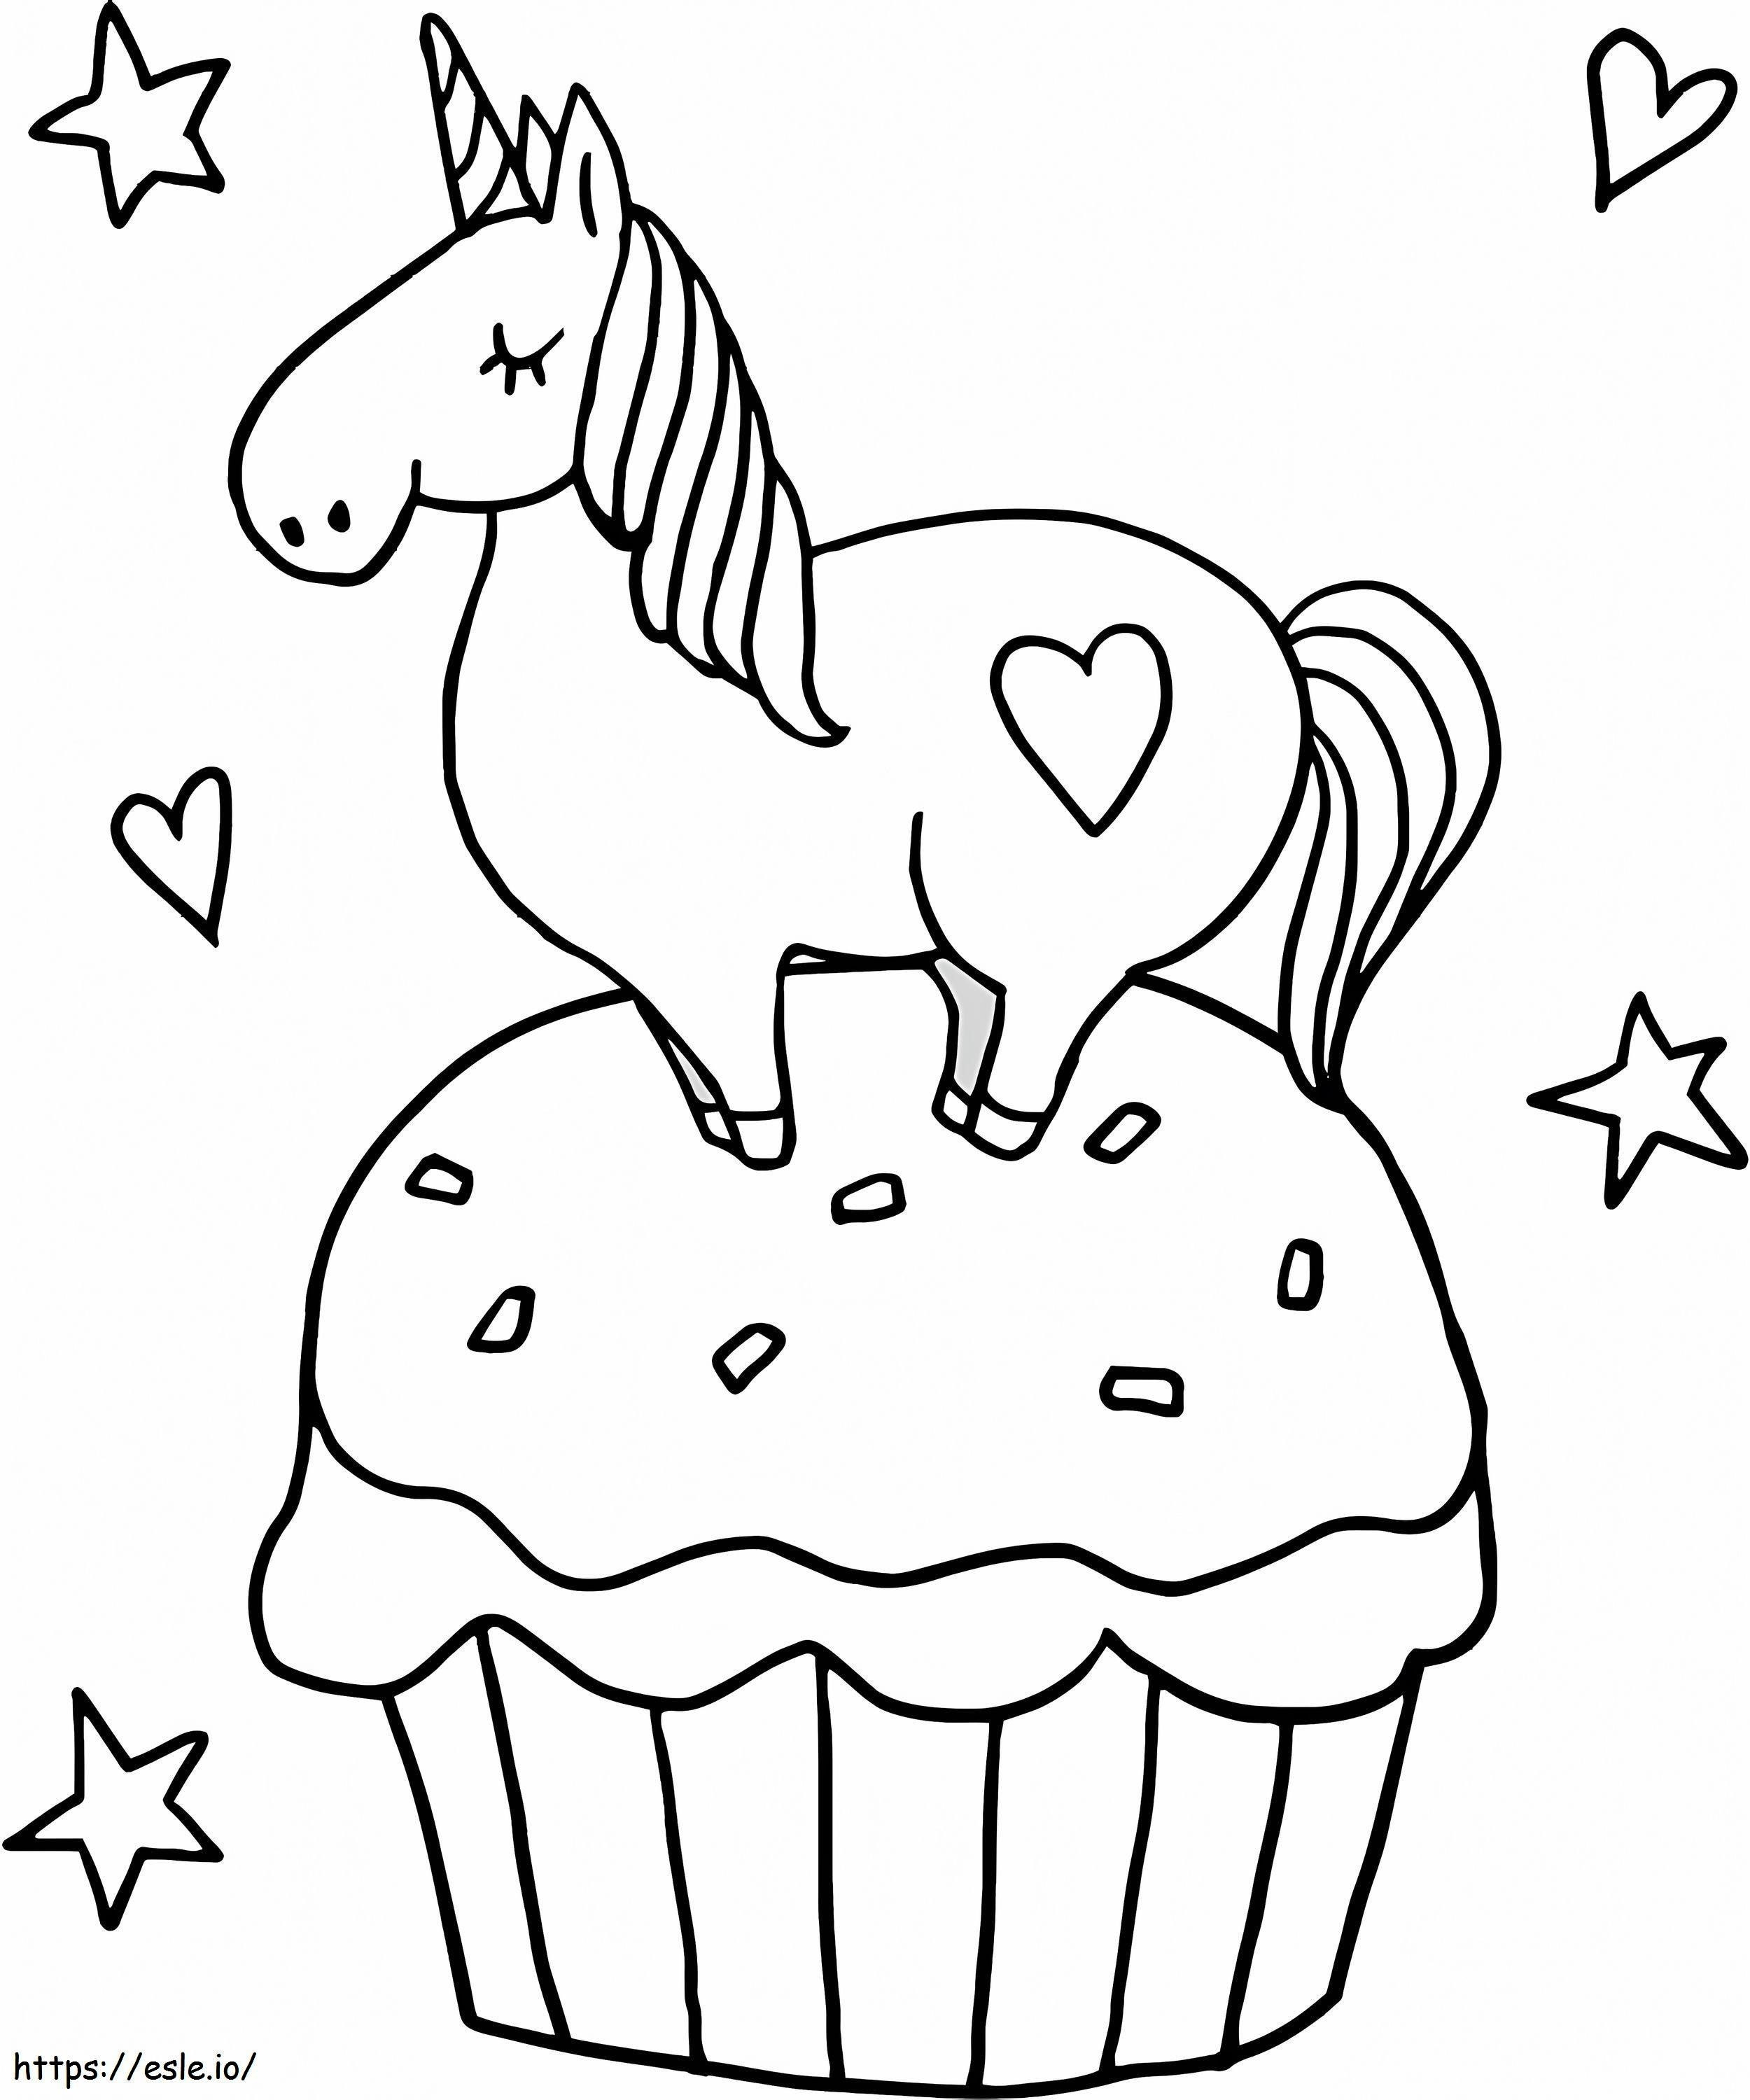 1563326262 Pequeño Unicornio En Cupcake A4 para colorear